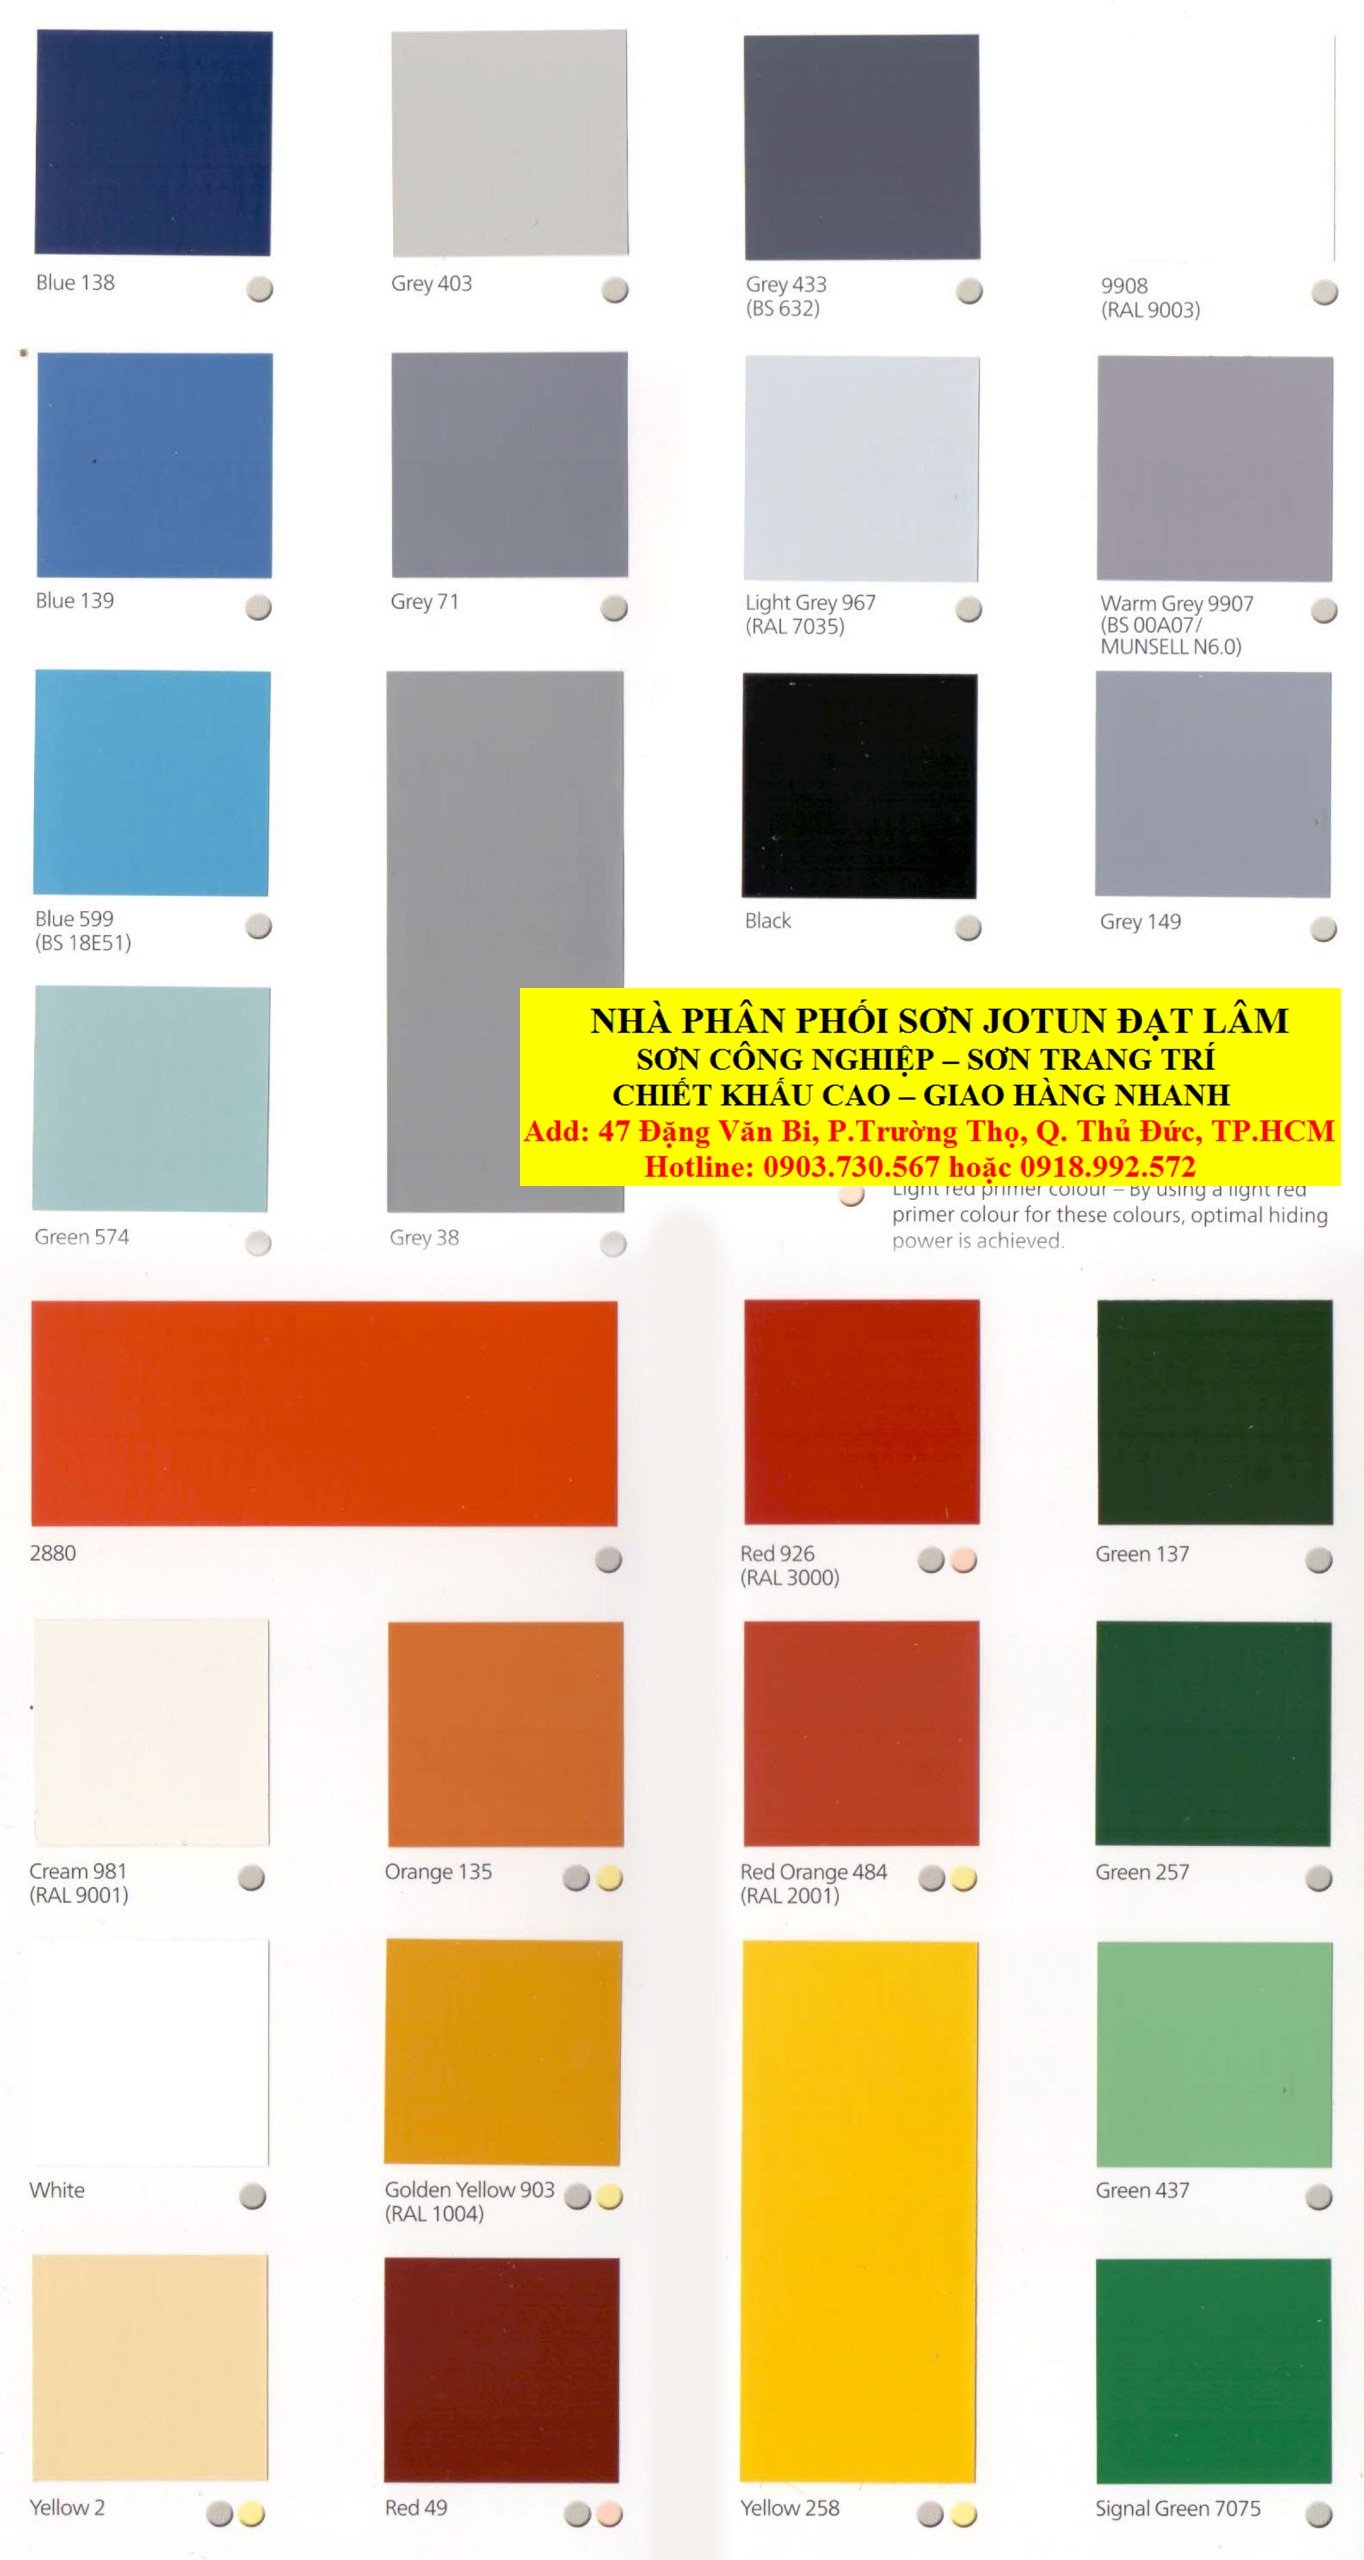 Lưu trữ bảng màu sơn công nghiệp giúp bạn dễ dàng lựa chọn và bảo quản màu sắc sơn trong quá trình sử dụng. Xem hình ảnh liên quan để tìm hiểu thêm về cách lưu trữ và sử dụng bảng màu sơn công nghiệp.